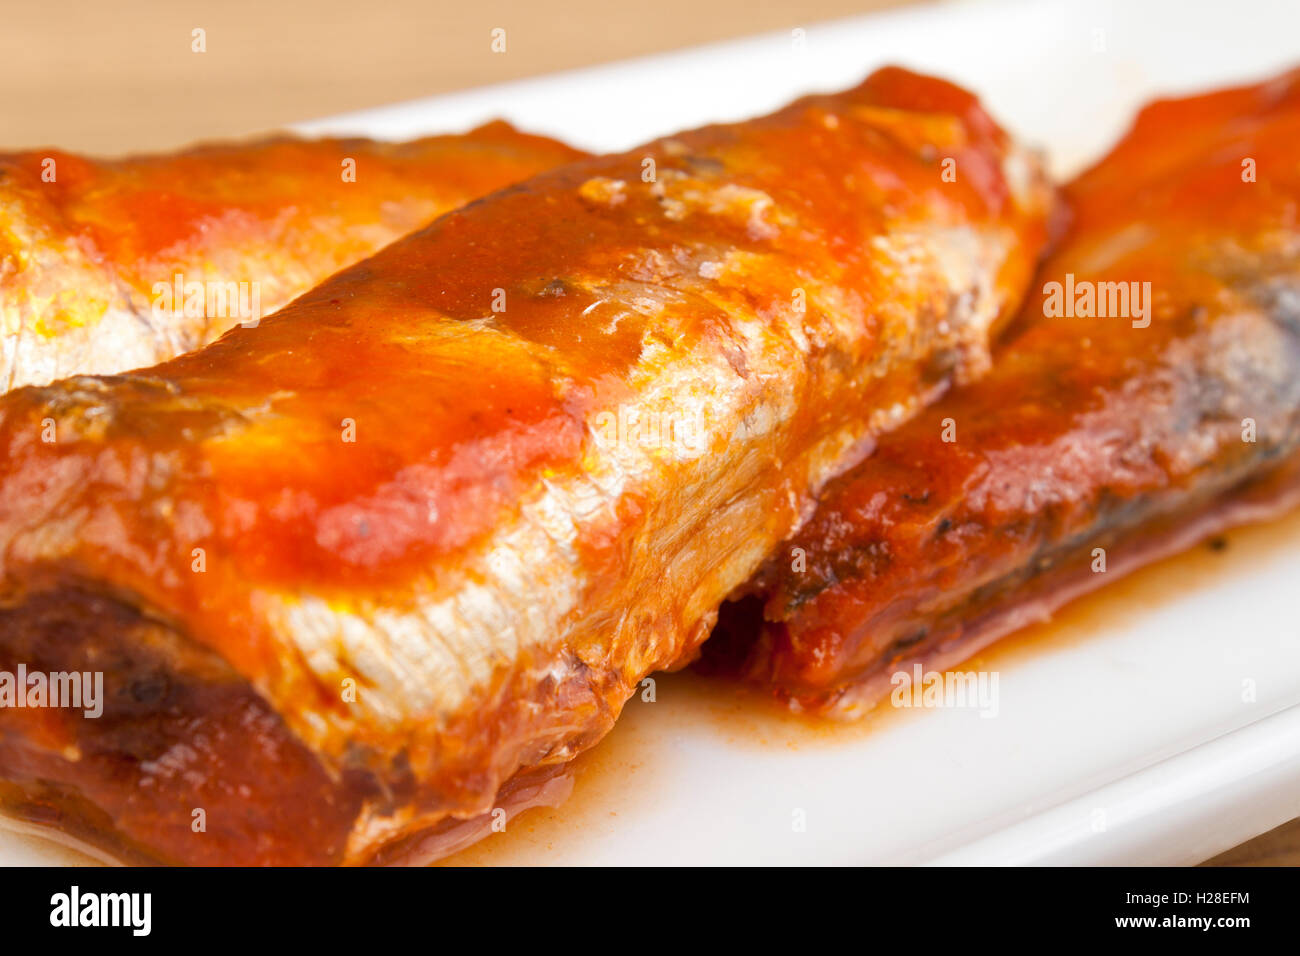 Gros plan de sardines dans une riche sauce tomate sur une plaque Banque D'Images